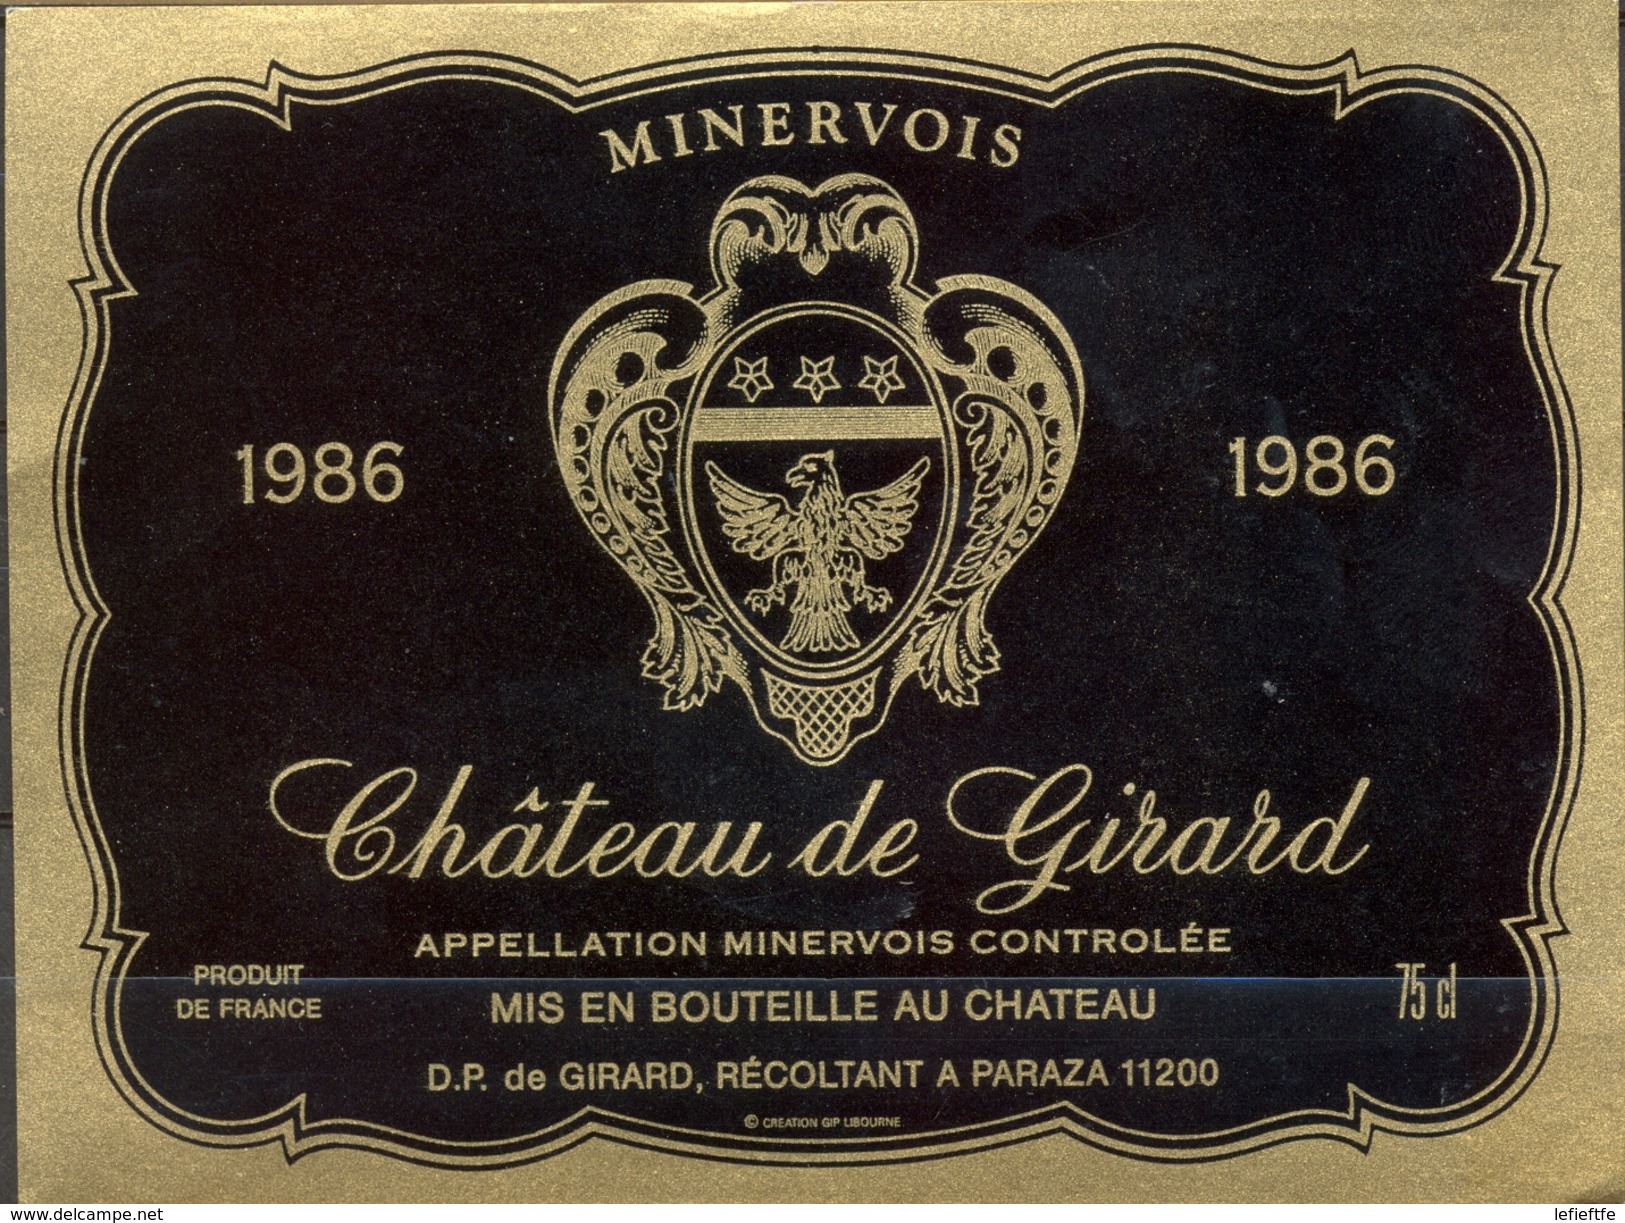 491 - France - 1986 - Minervois - Château De Girard - D.P. De Girard Récoltant à Paraza 11200 - Red Wines